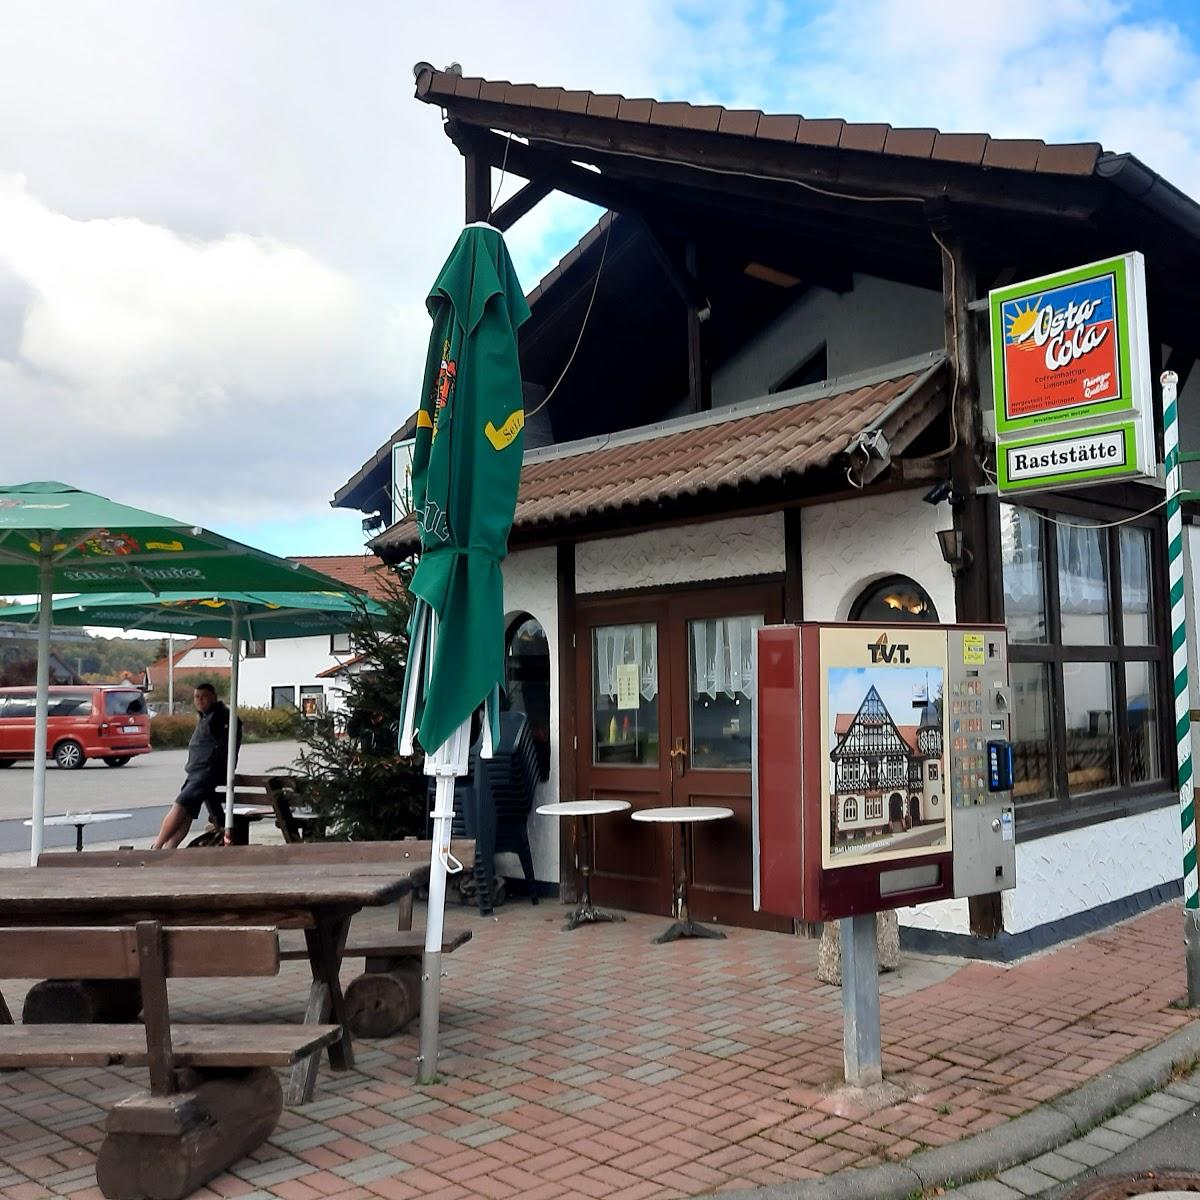 Restaurant "Rastätte im Wiesgrund. Inh. Kutzner & König GbR" in  Untermaßfeld